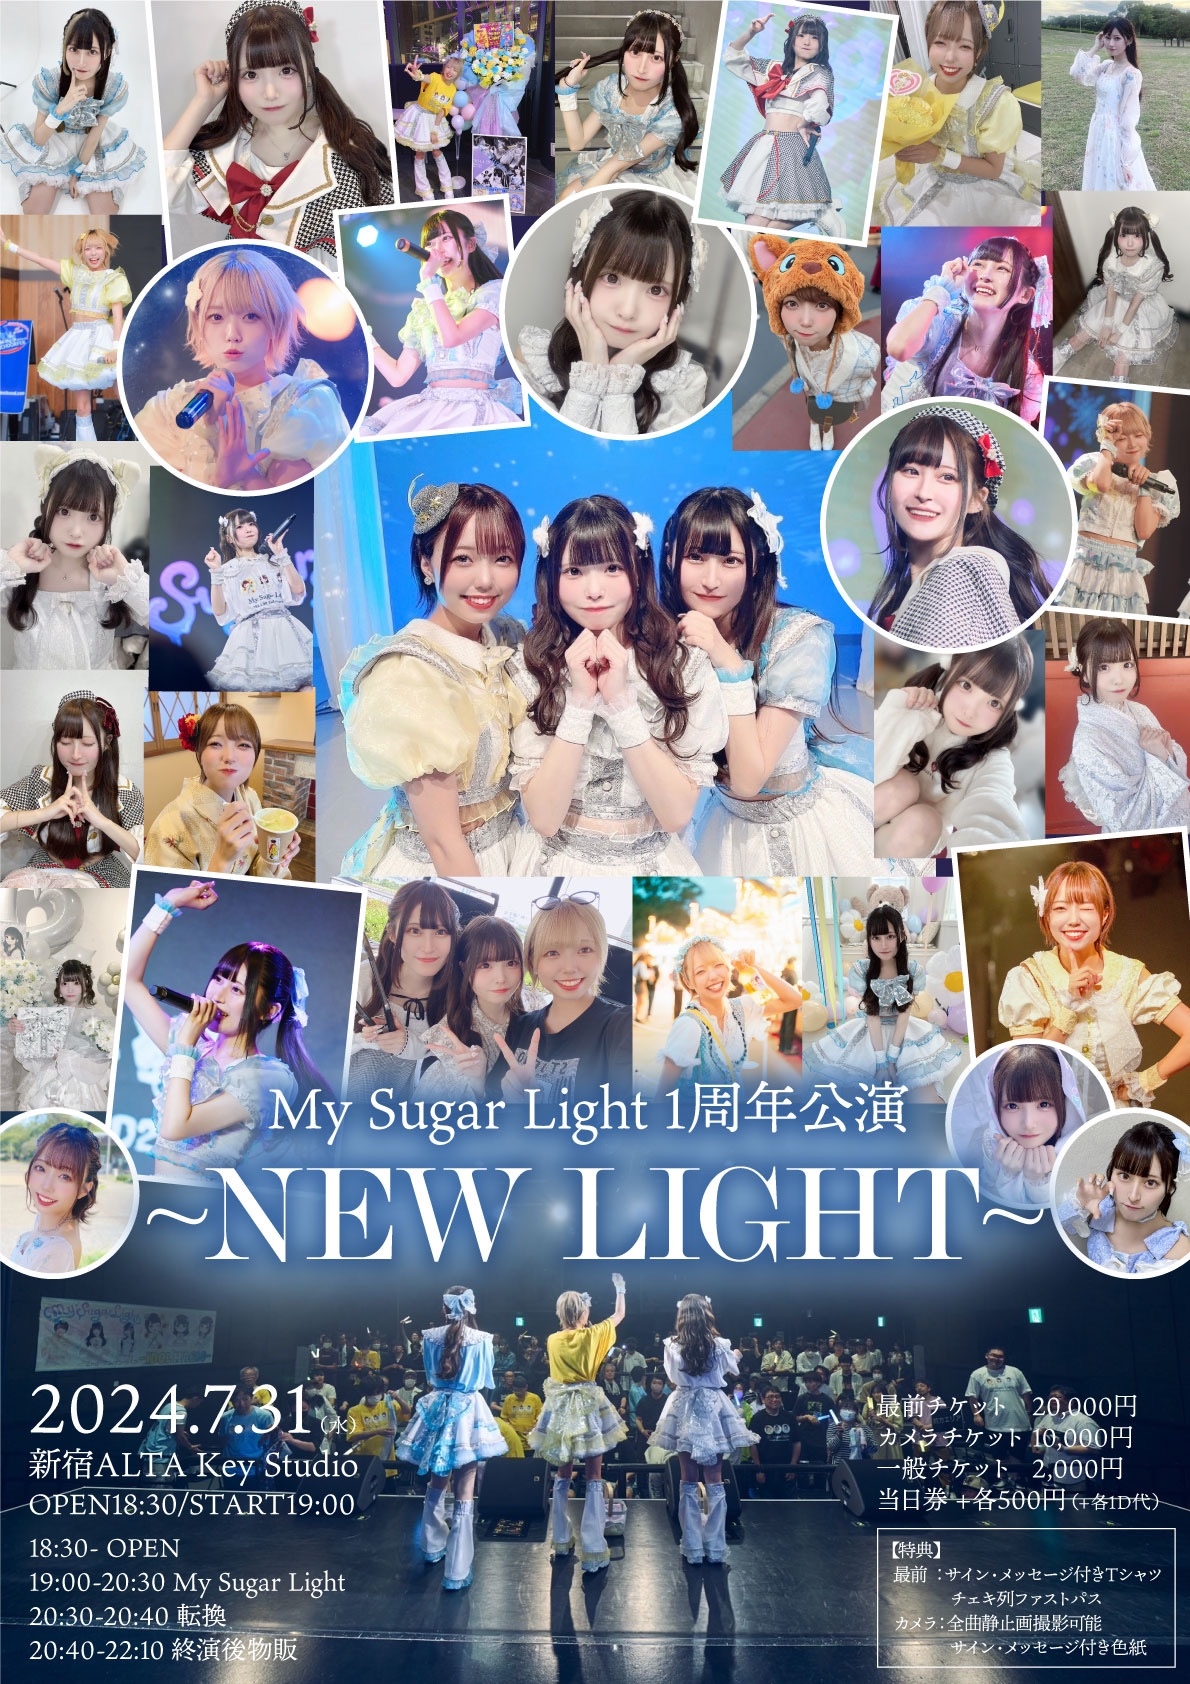 My Sugar Light 1周年公演 ~NEW LIGHT~